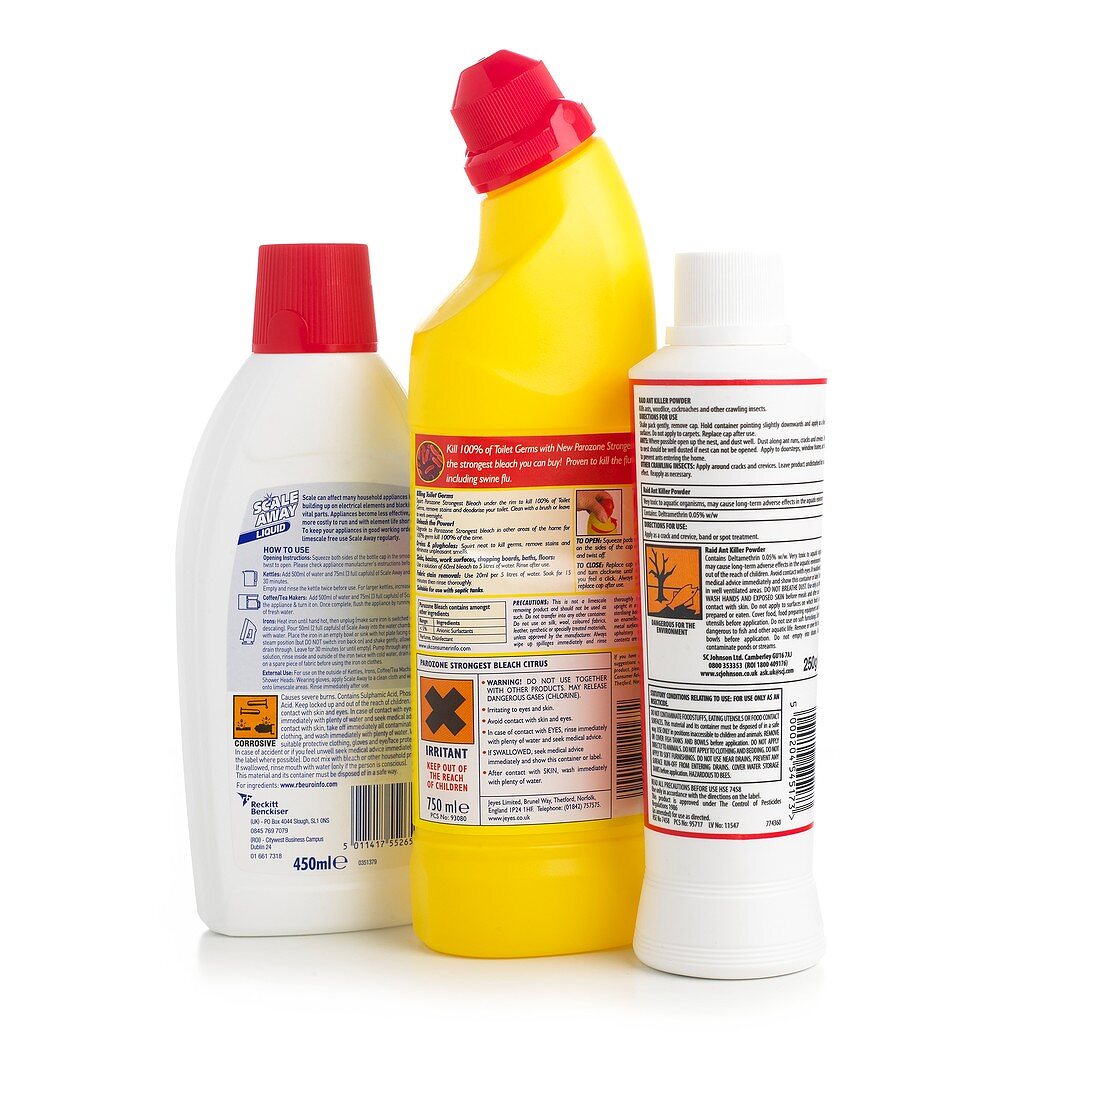 Hazardous domestic product labels